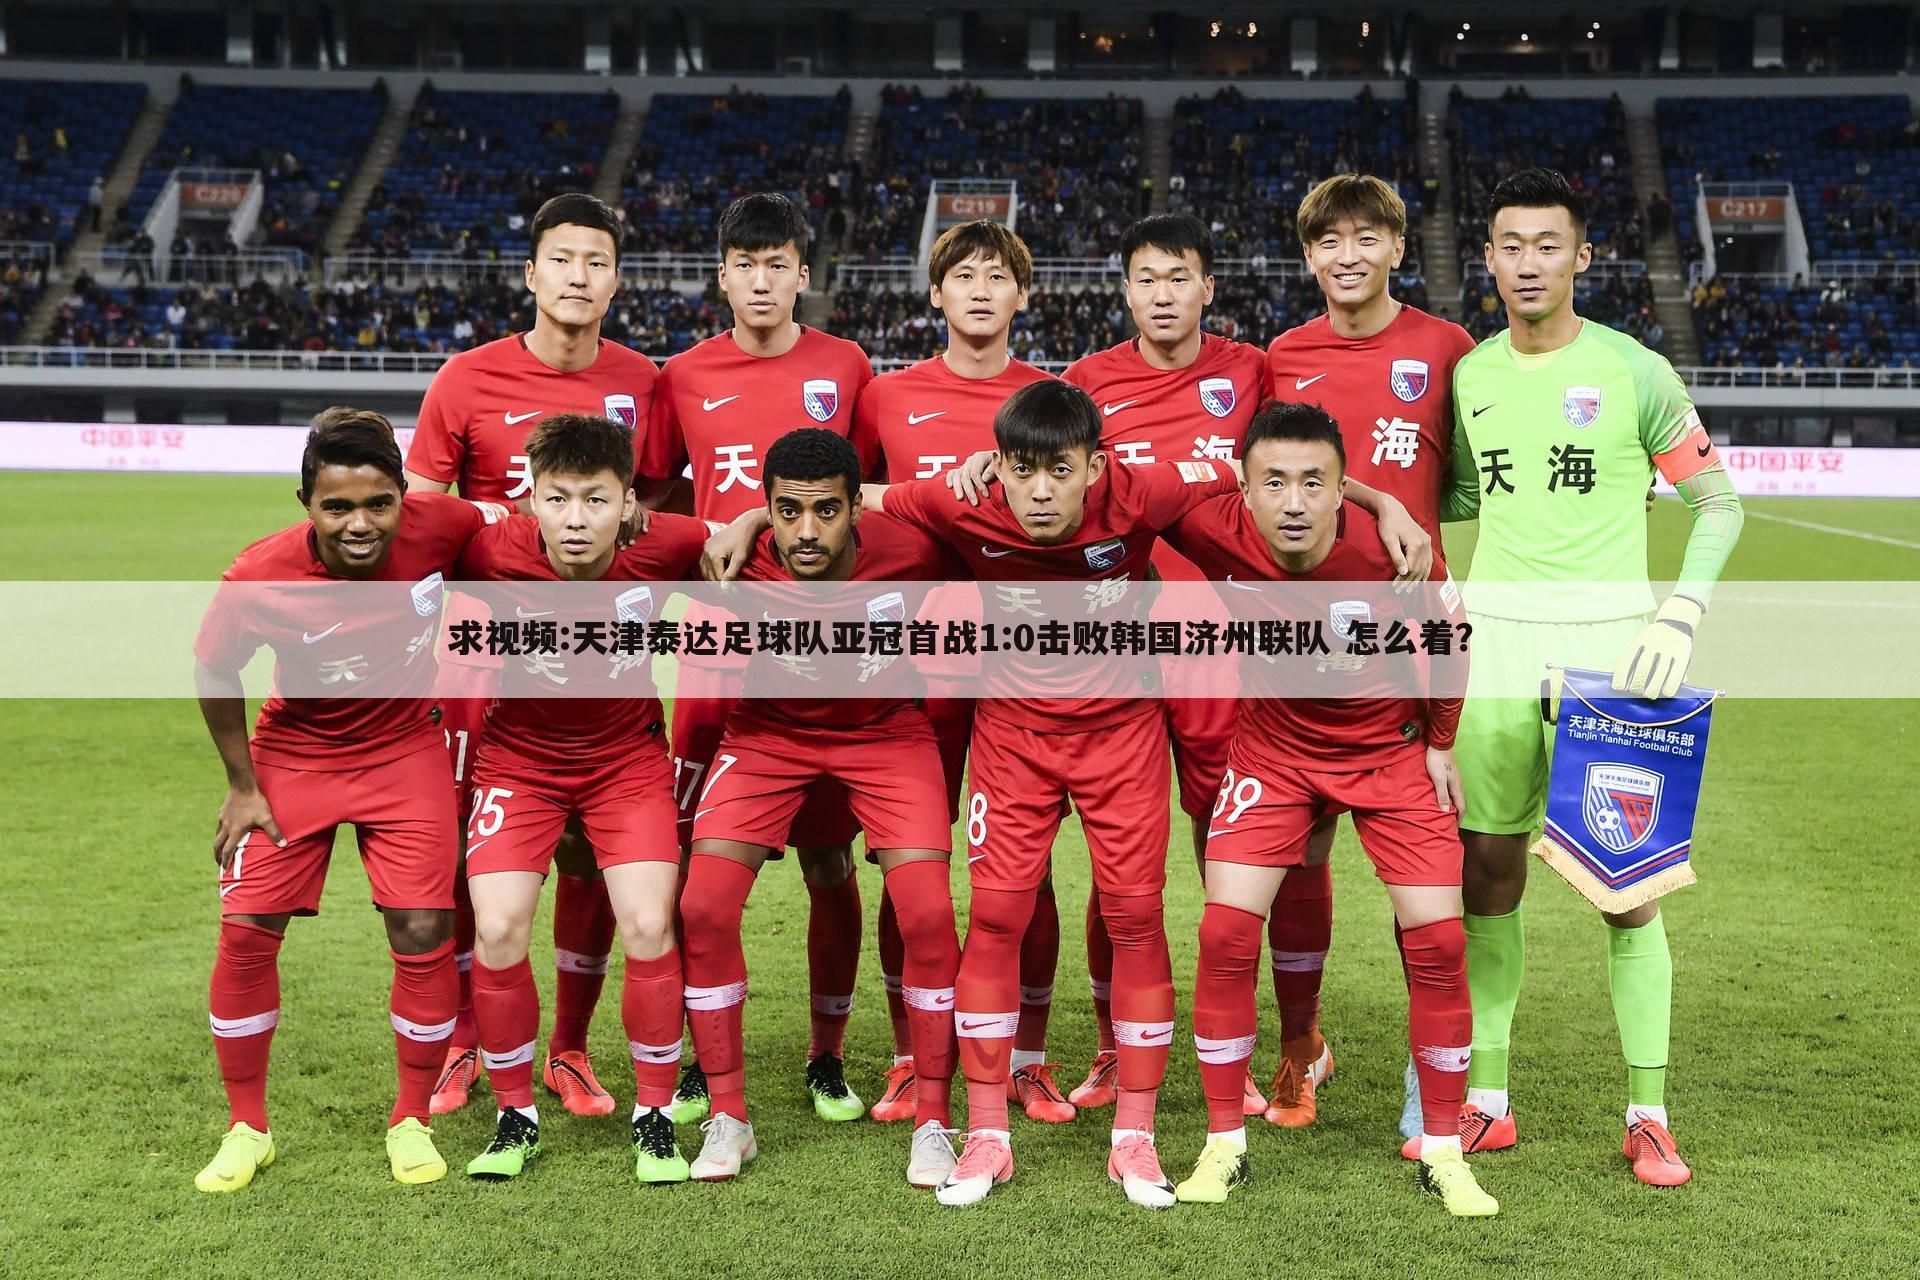 求视频:天津泰达足球队亚冠首战1:0击败韩国济州联队 怎么着？